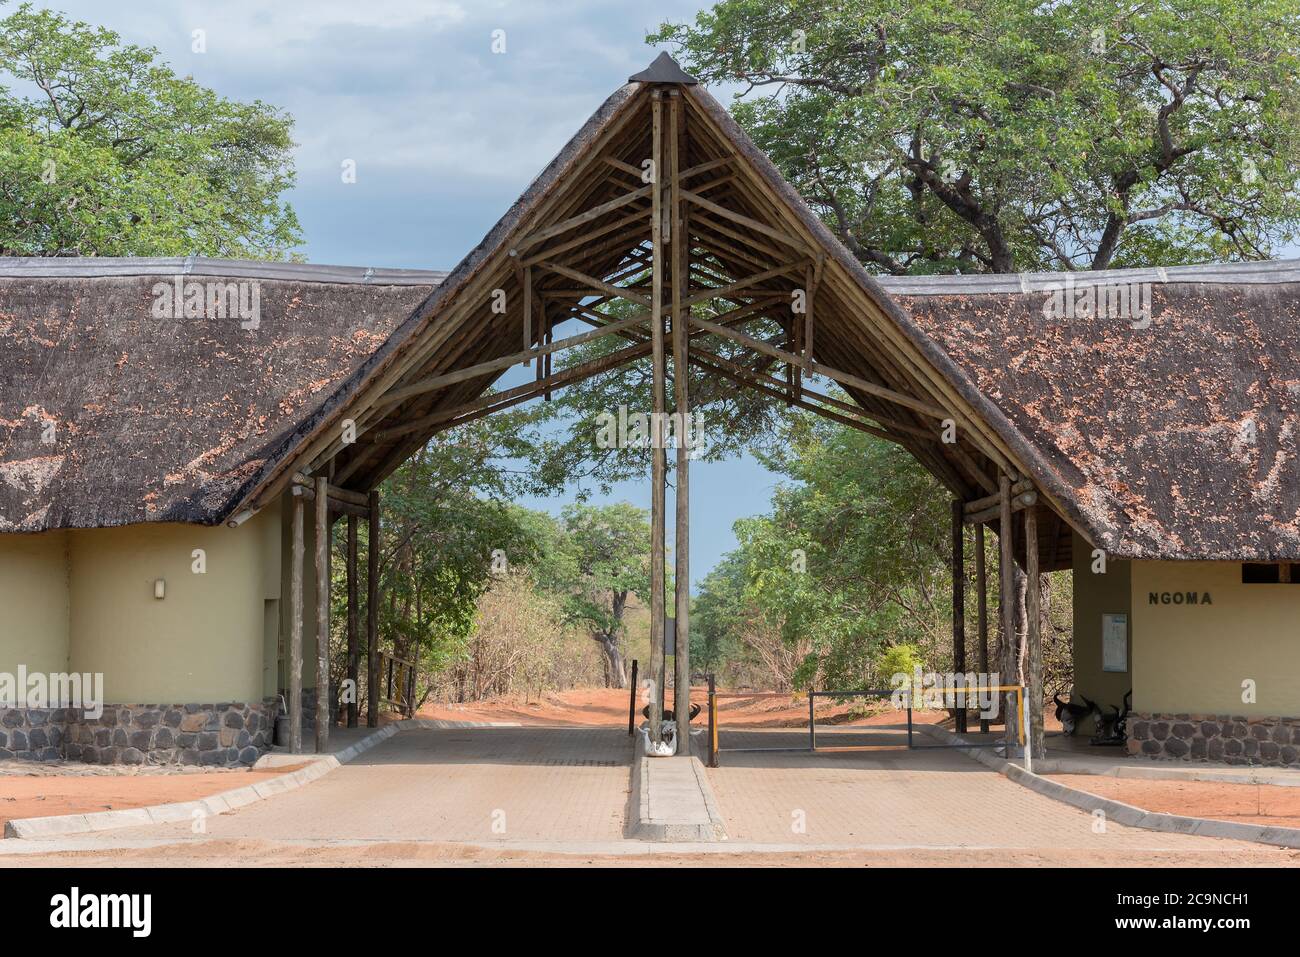 La porte de Ngoma du parc national de Chobe, Botswana, Afrique Banque D'Images